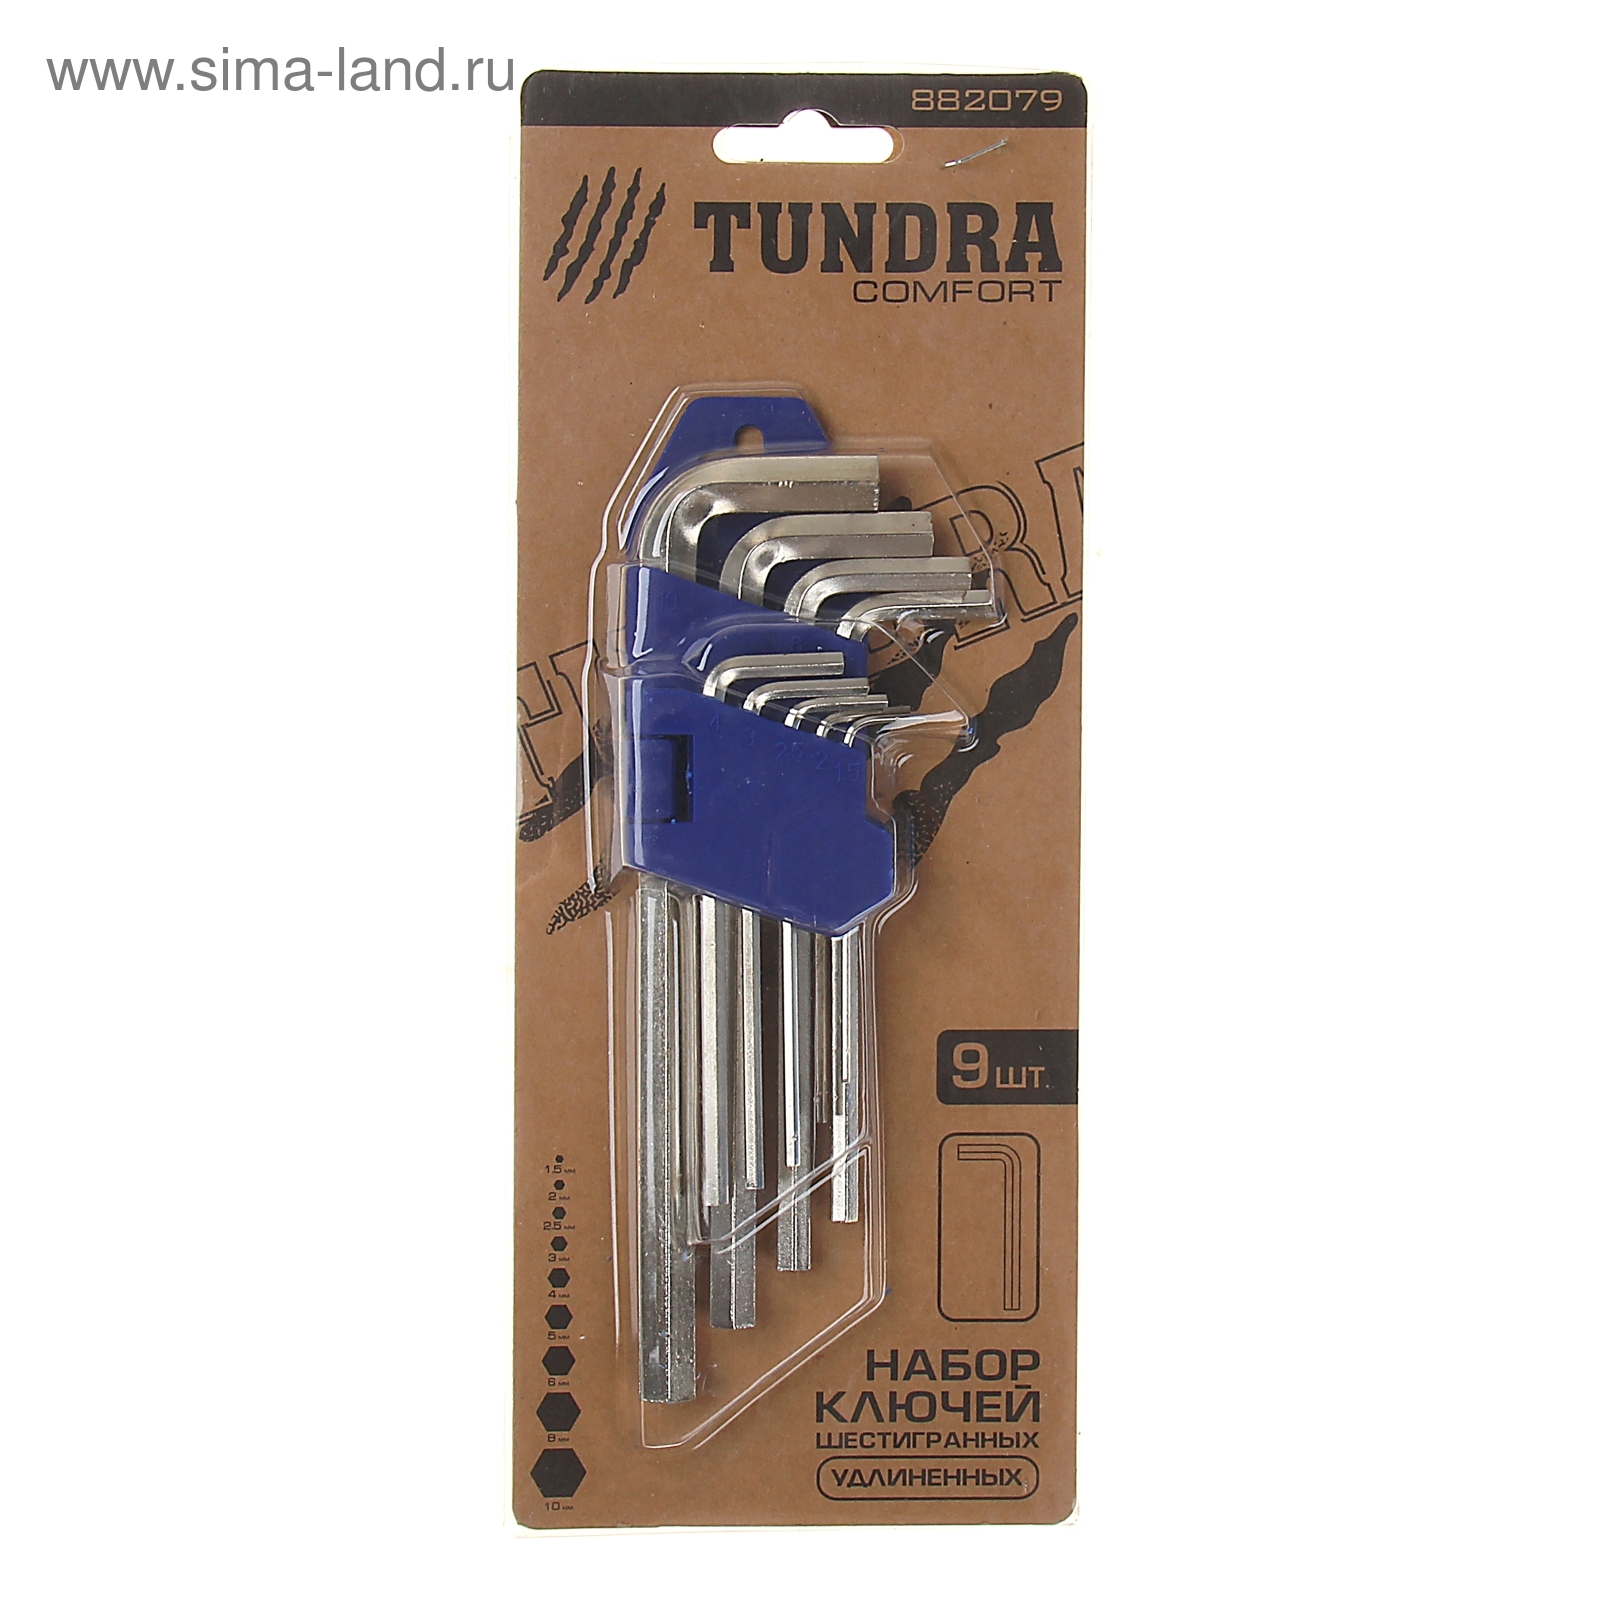 Набор ключей шестигранников TUNDRA comfort, 1.5 - 10 мм 9 штук, удлиненные